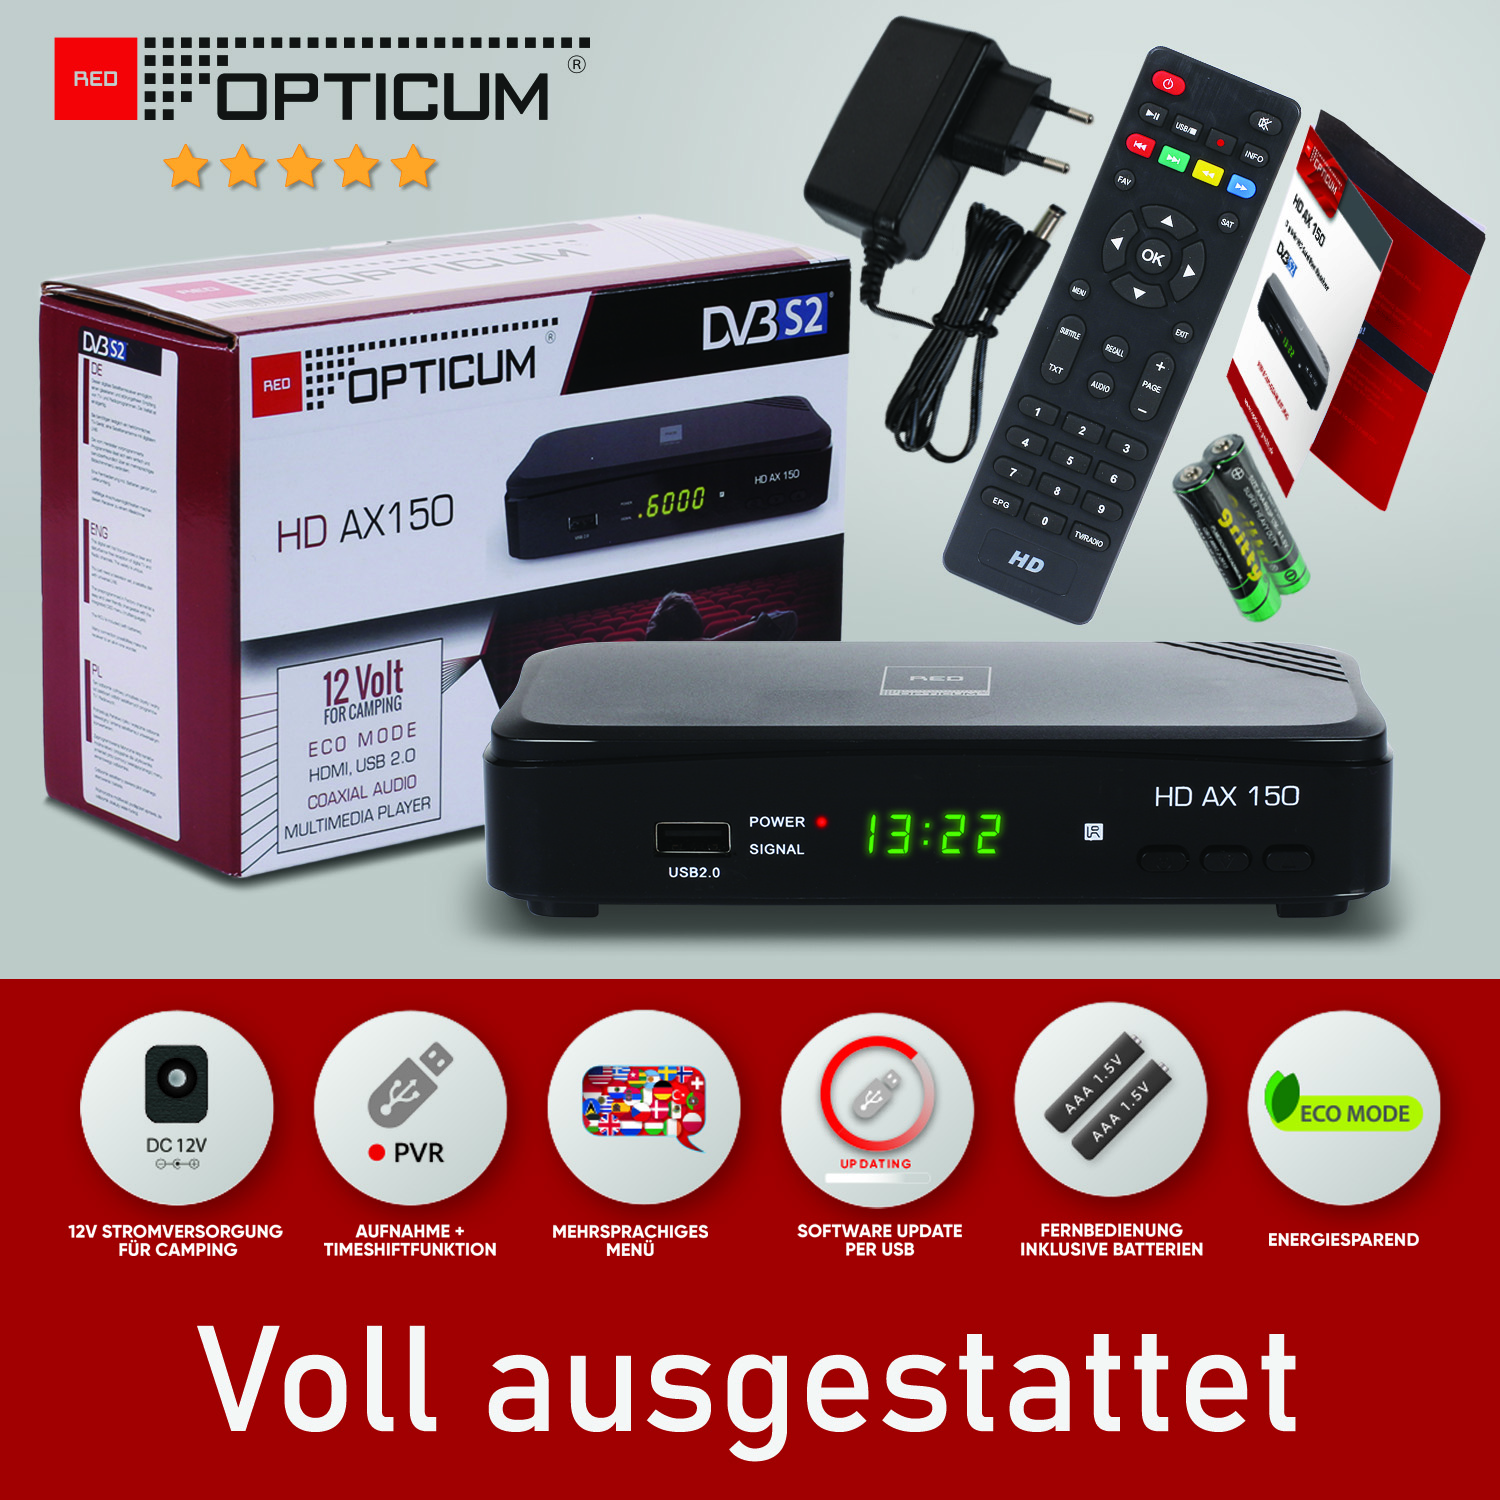 OPTICUM Opticum (HDTV, mit PVR RED 150 DVB-S, schwarz) PVR-Funktion, AX DVB-S2, Sat-Receiver